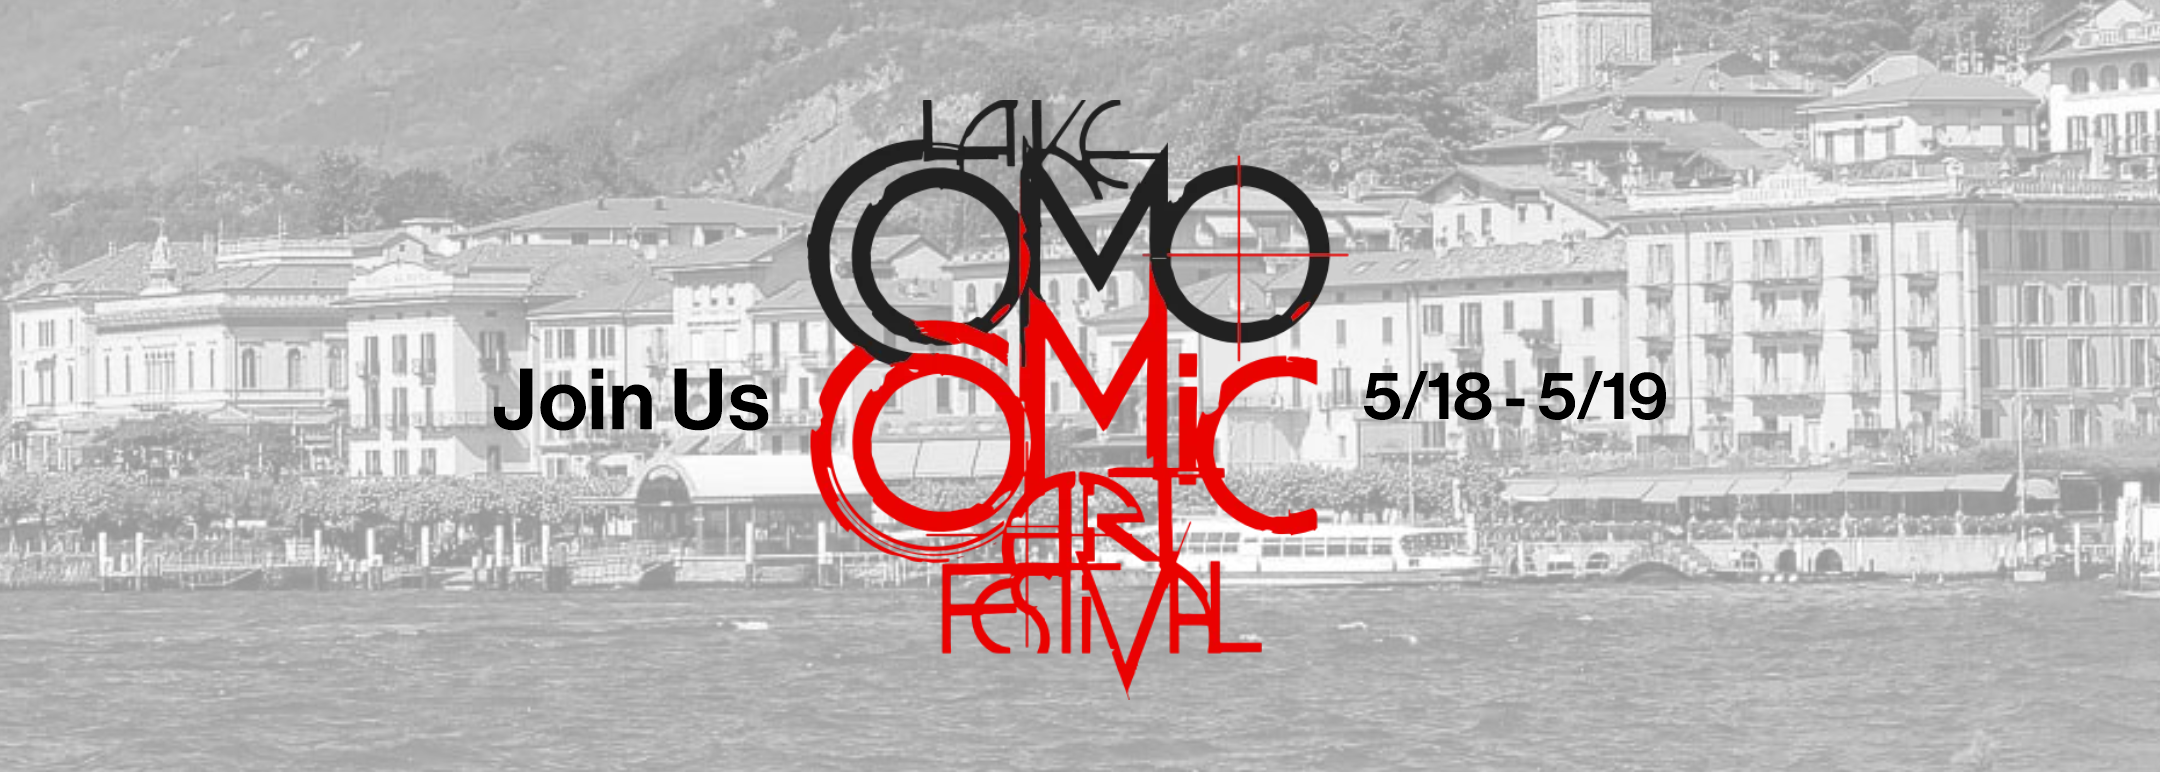 The Lake Como Comic Art Festival